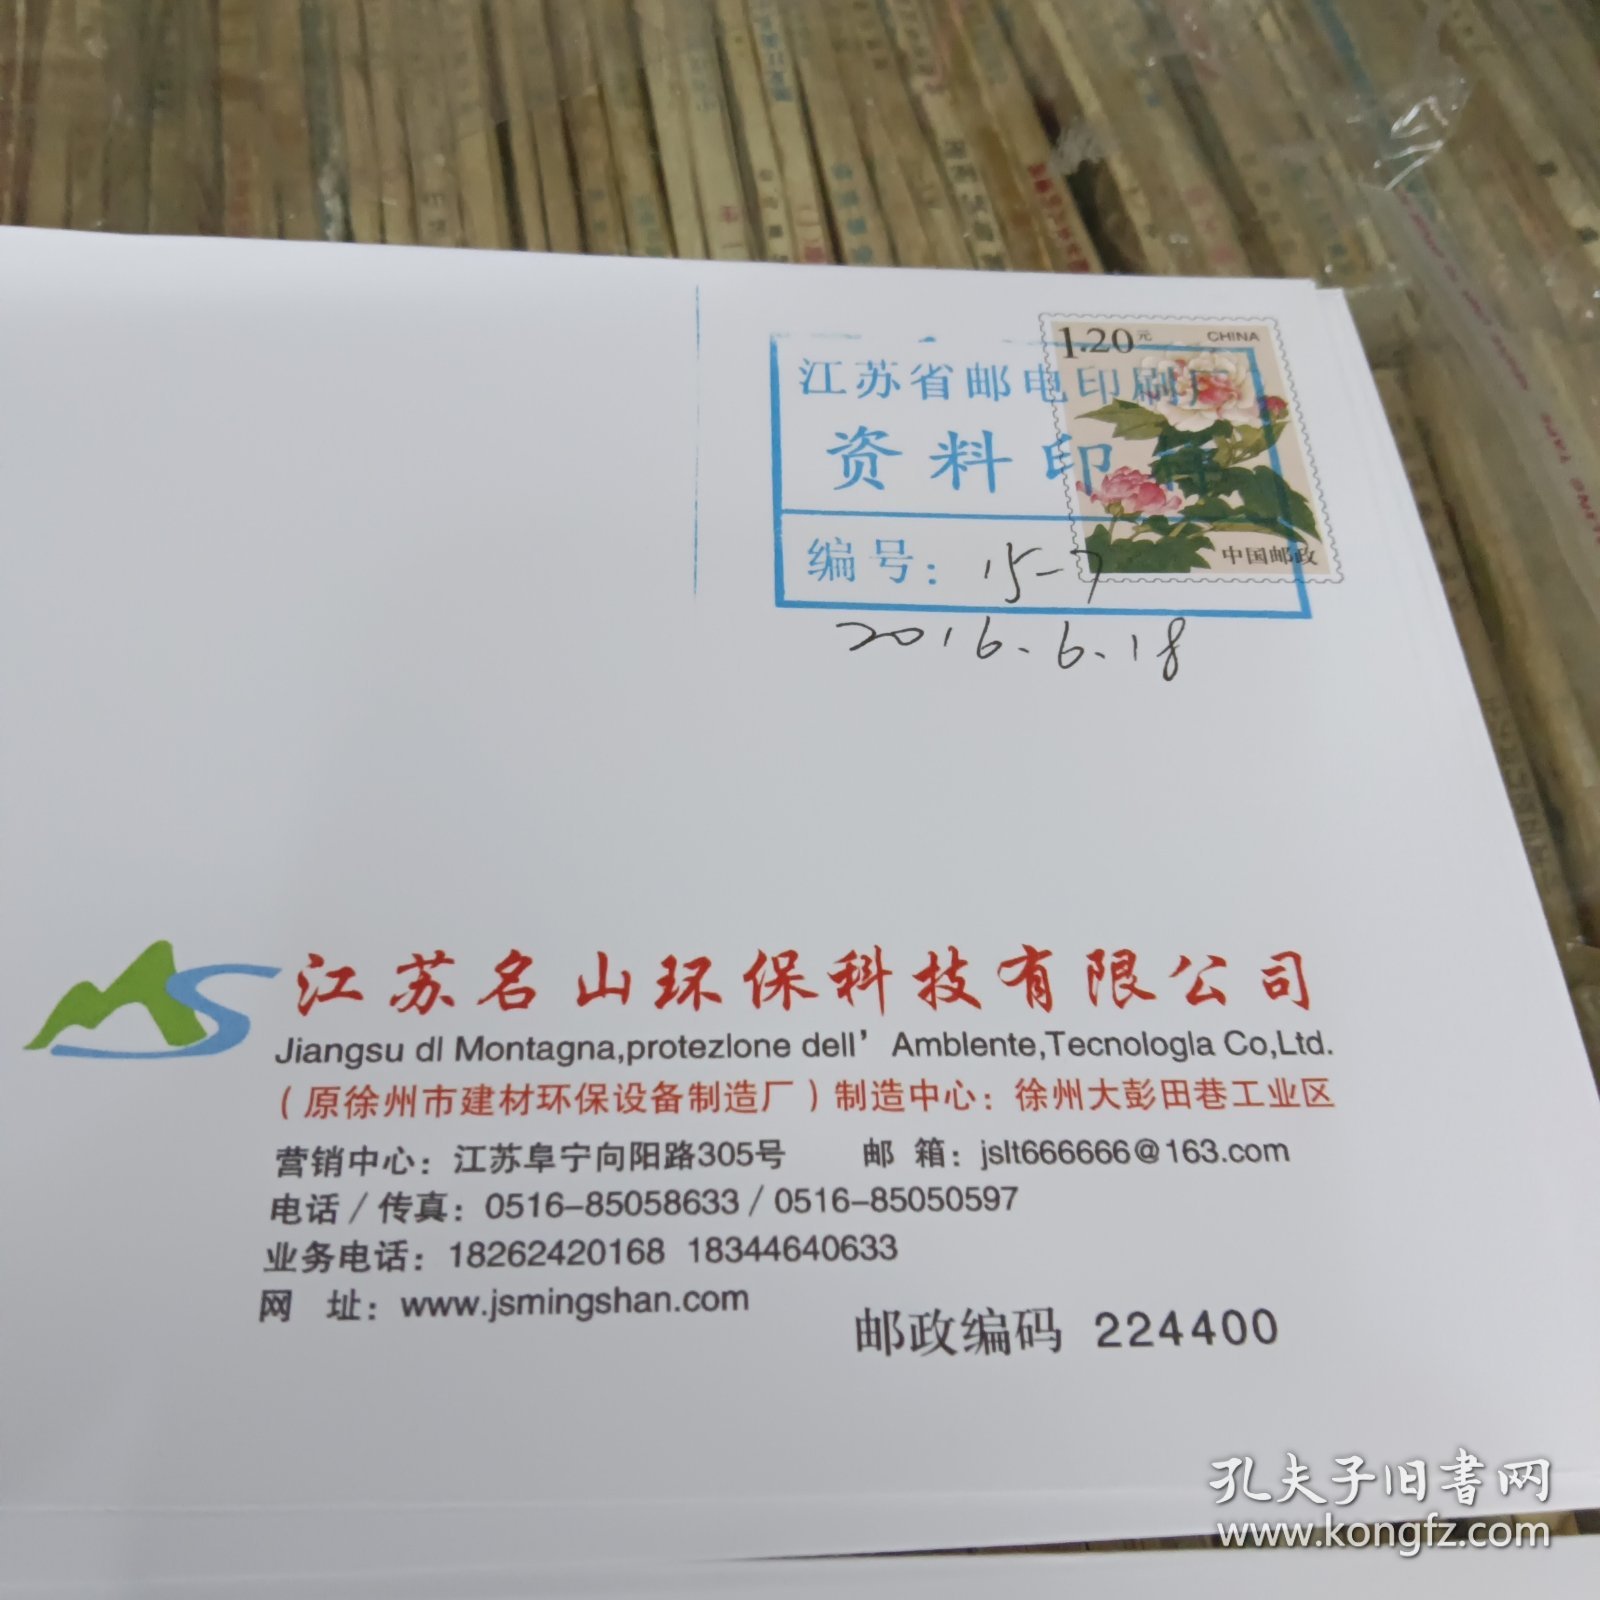 江苏名山环保科技有限公司1.2元芙蓉花邮资信封资料印样一封